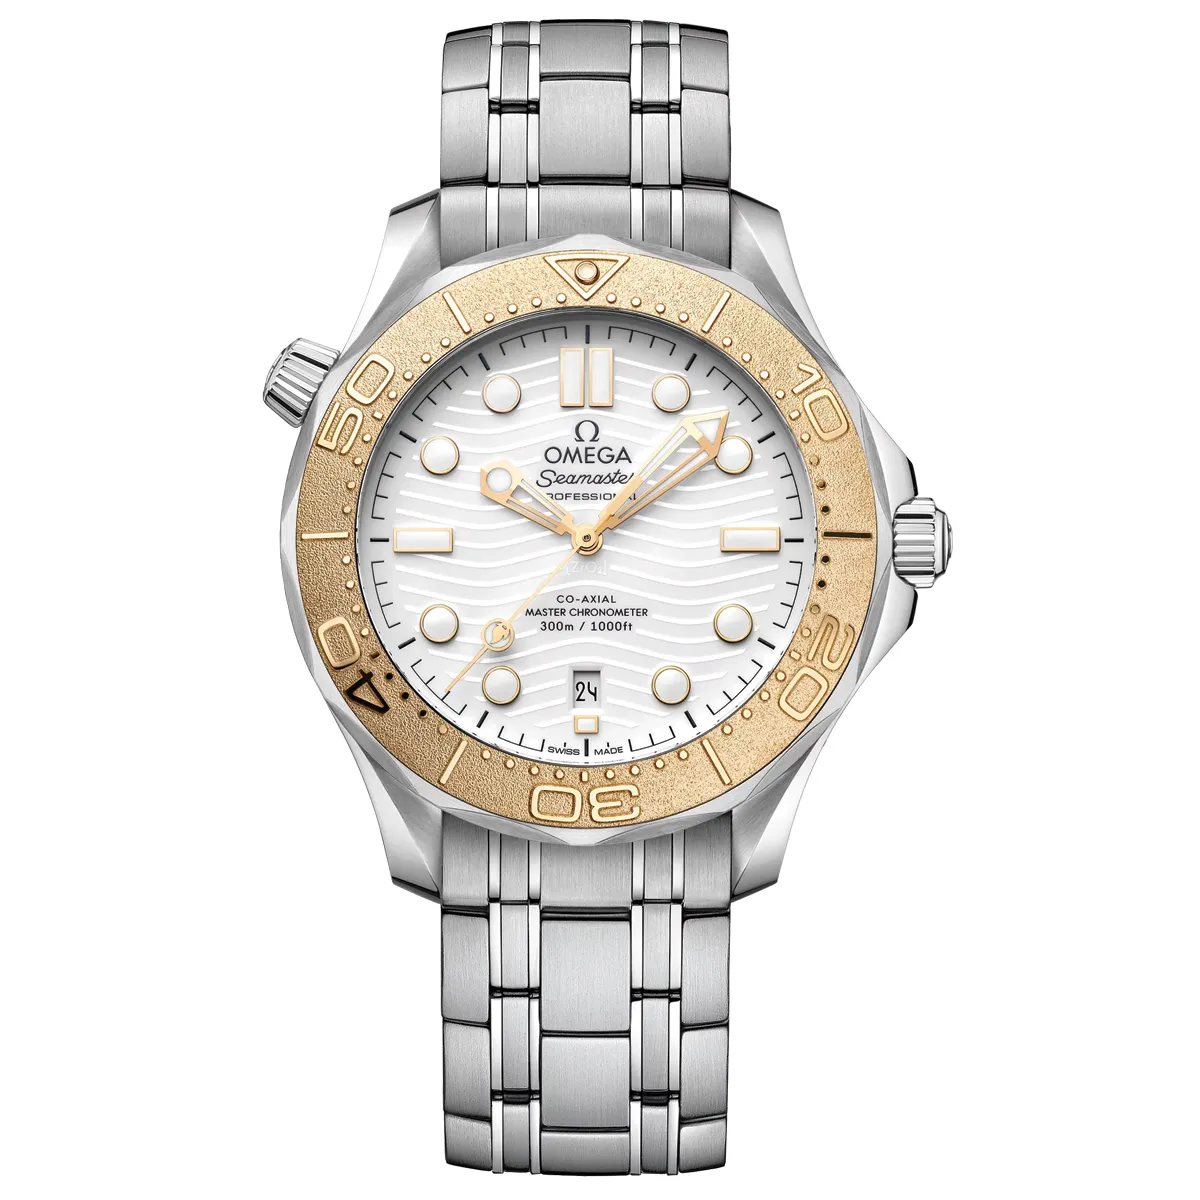 Đồng hồ Omega Seamaster Diver 300M Paris Edition 522.21.42.20.04.001 mặt số màu trắng. Dây đeo bằng thép. Thân vỏ bằng thép.